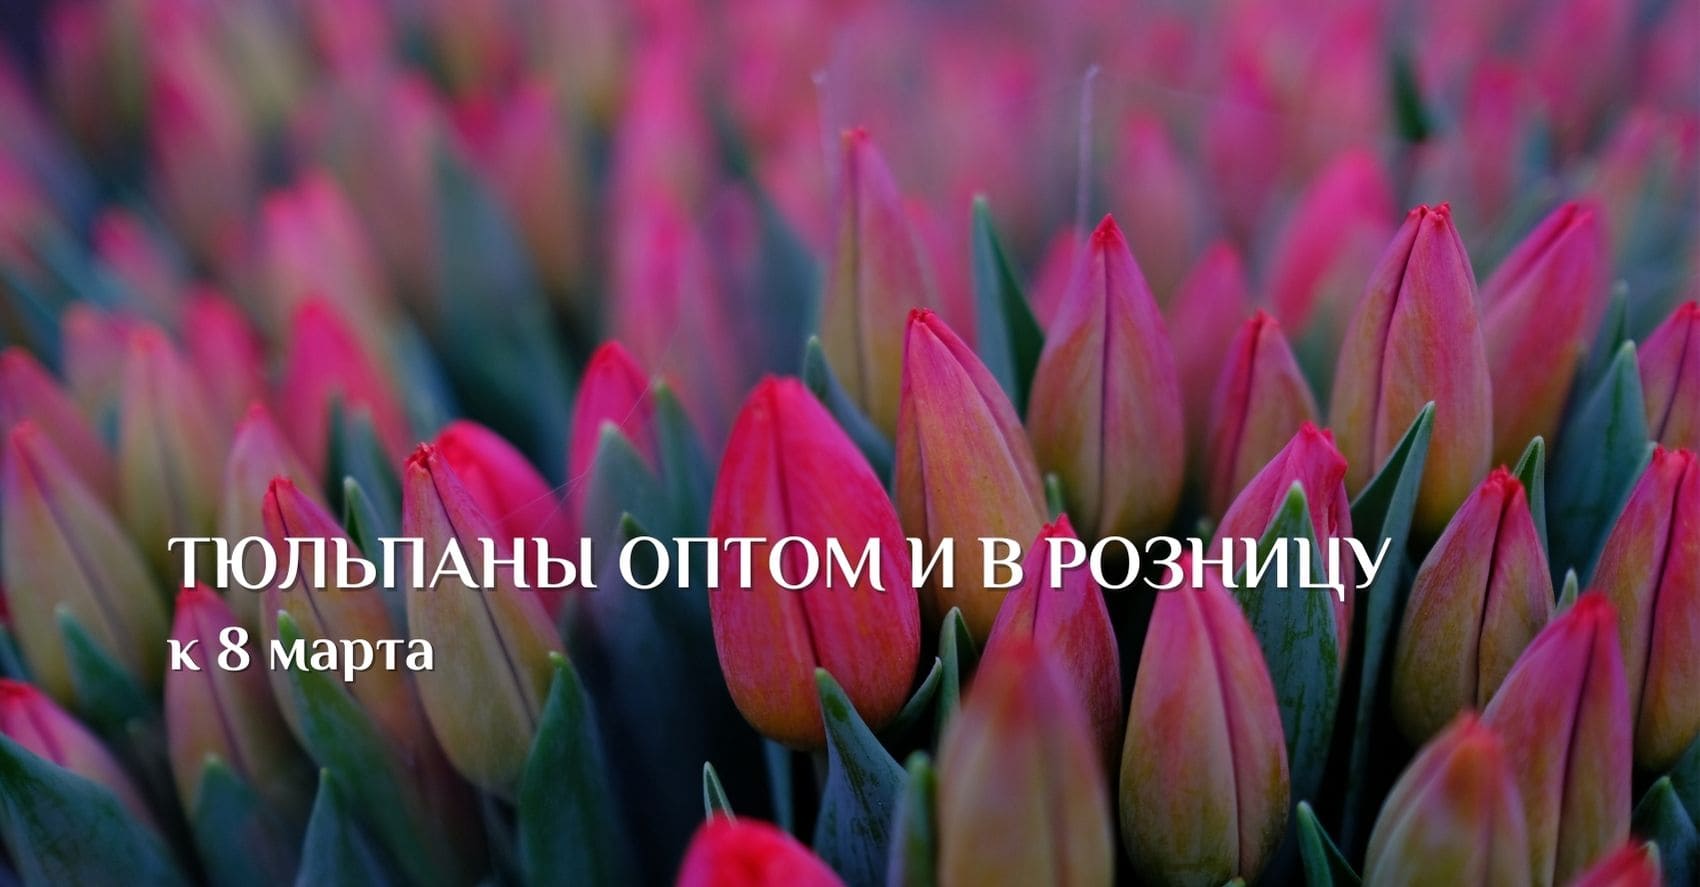 Тюльпаны оптом и в розницу к 8 марта от 32 руб/шт